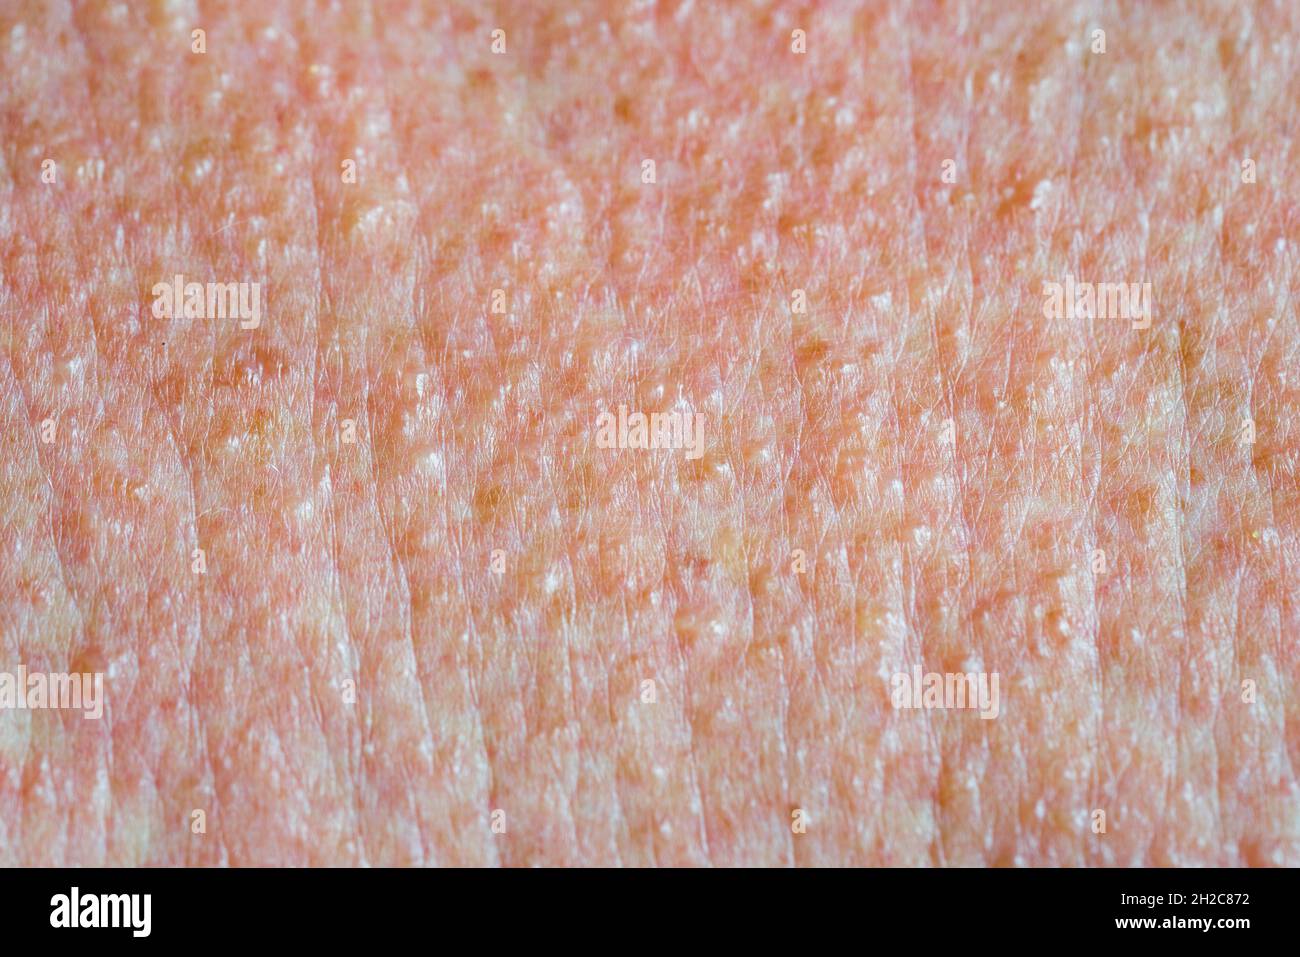 Tessuto cutaneo doloroso in vesciche rosse rash cutanei dopo ustione chimica Foto Stock